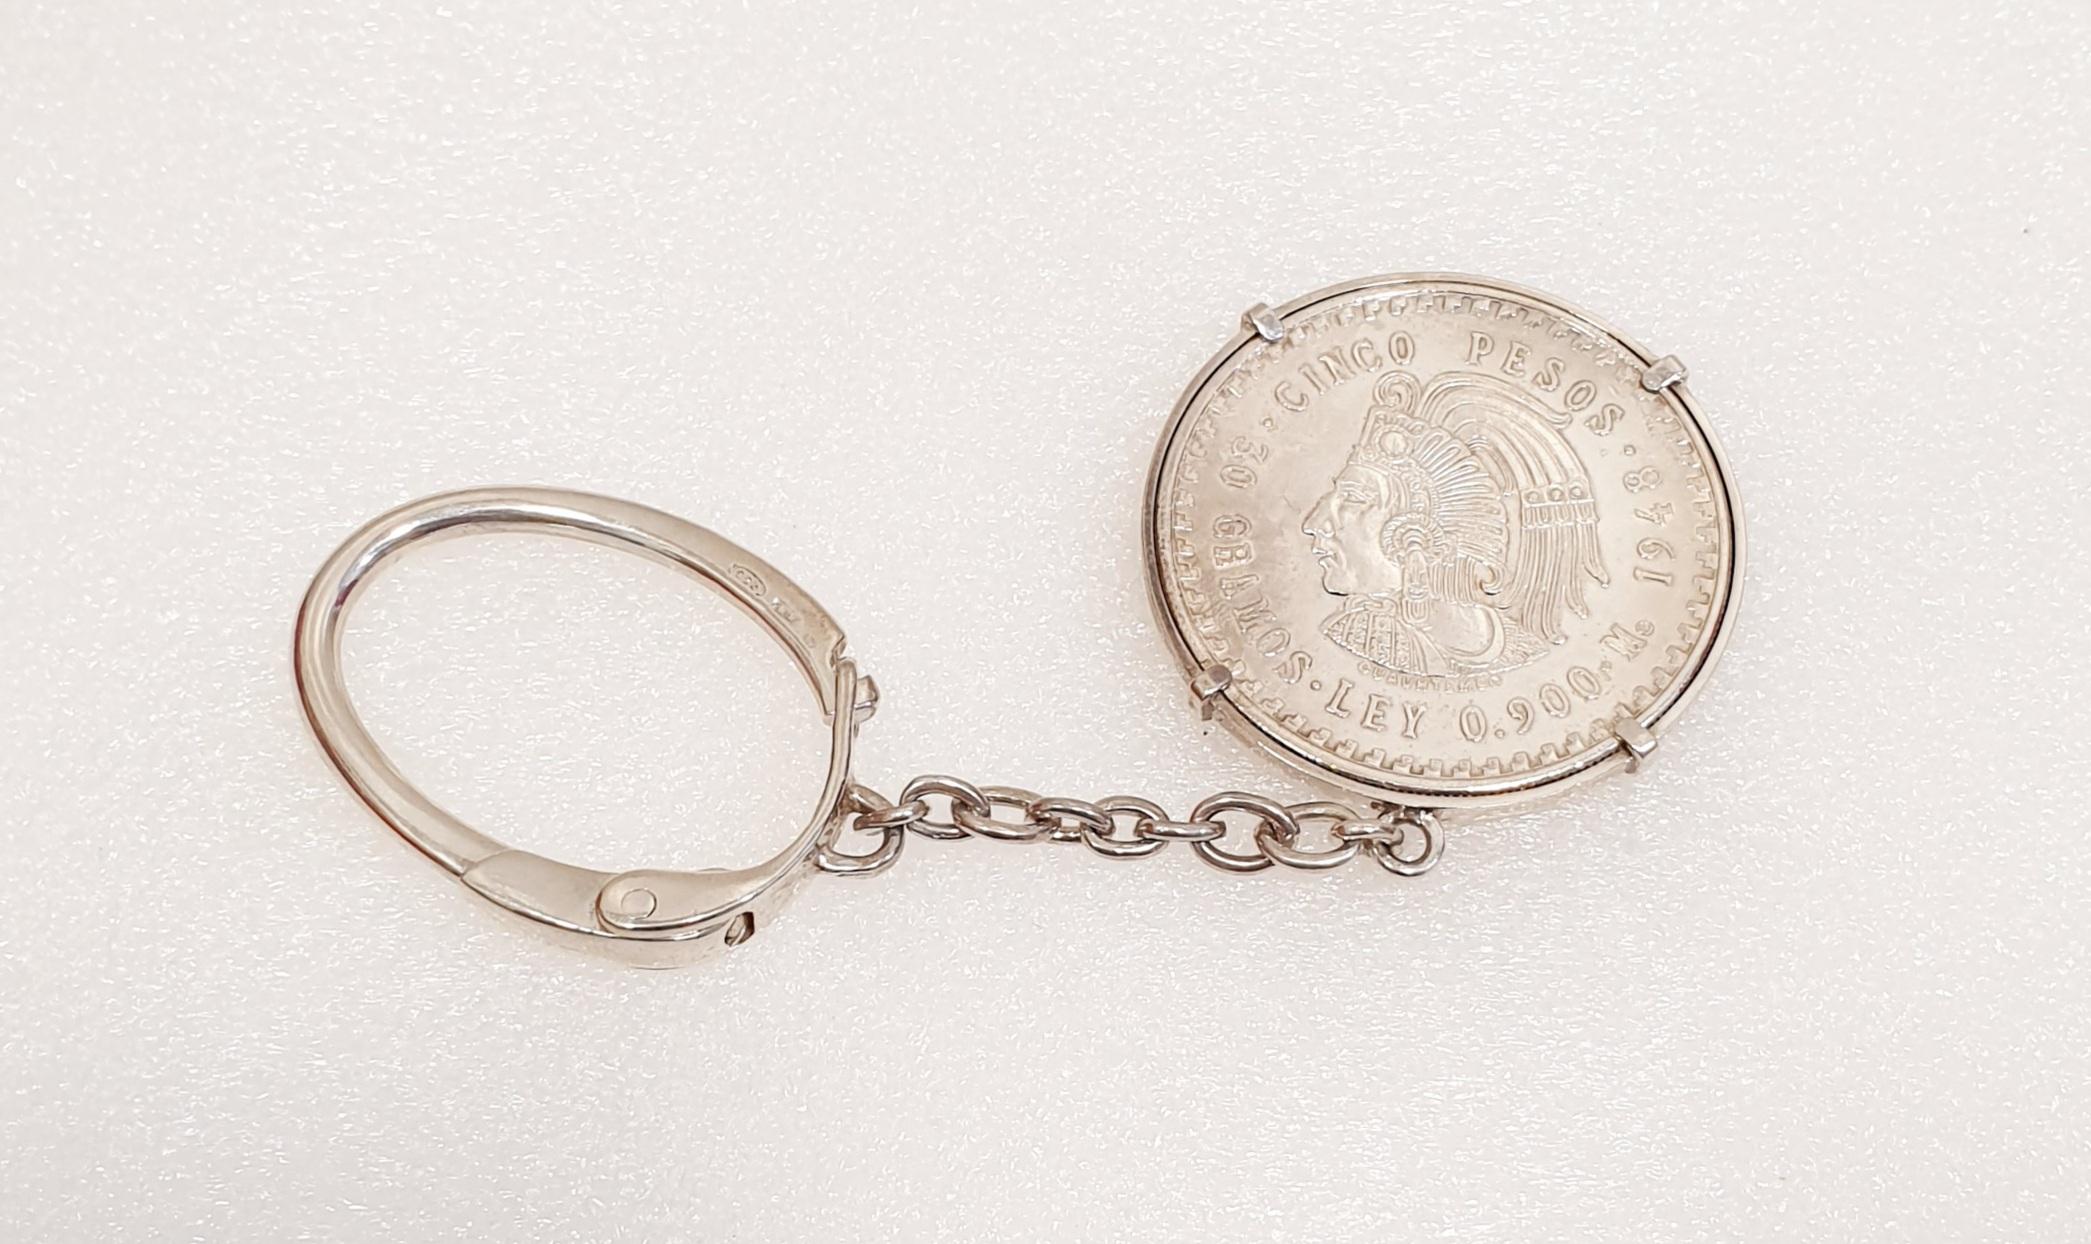 Silbermünze 5 Pesos 1947 Cuauhtemoc in seinem Schlüsselanhänger
Fünf Pesos Cuauhtémoc Silbermünze, Jahr 1947, mit seinem ursprünglichen Glanz in seinem Schlüsselring
Gewicht: 30 Gramm.      
Münzdurchmesser  4cm
Länge des Schlüsselrings  12,5cm
In